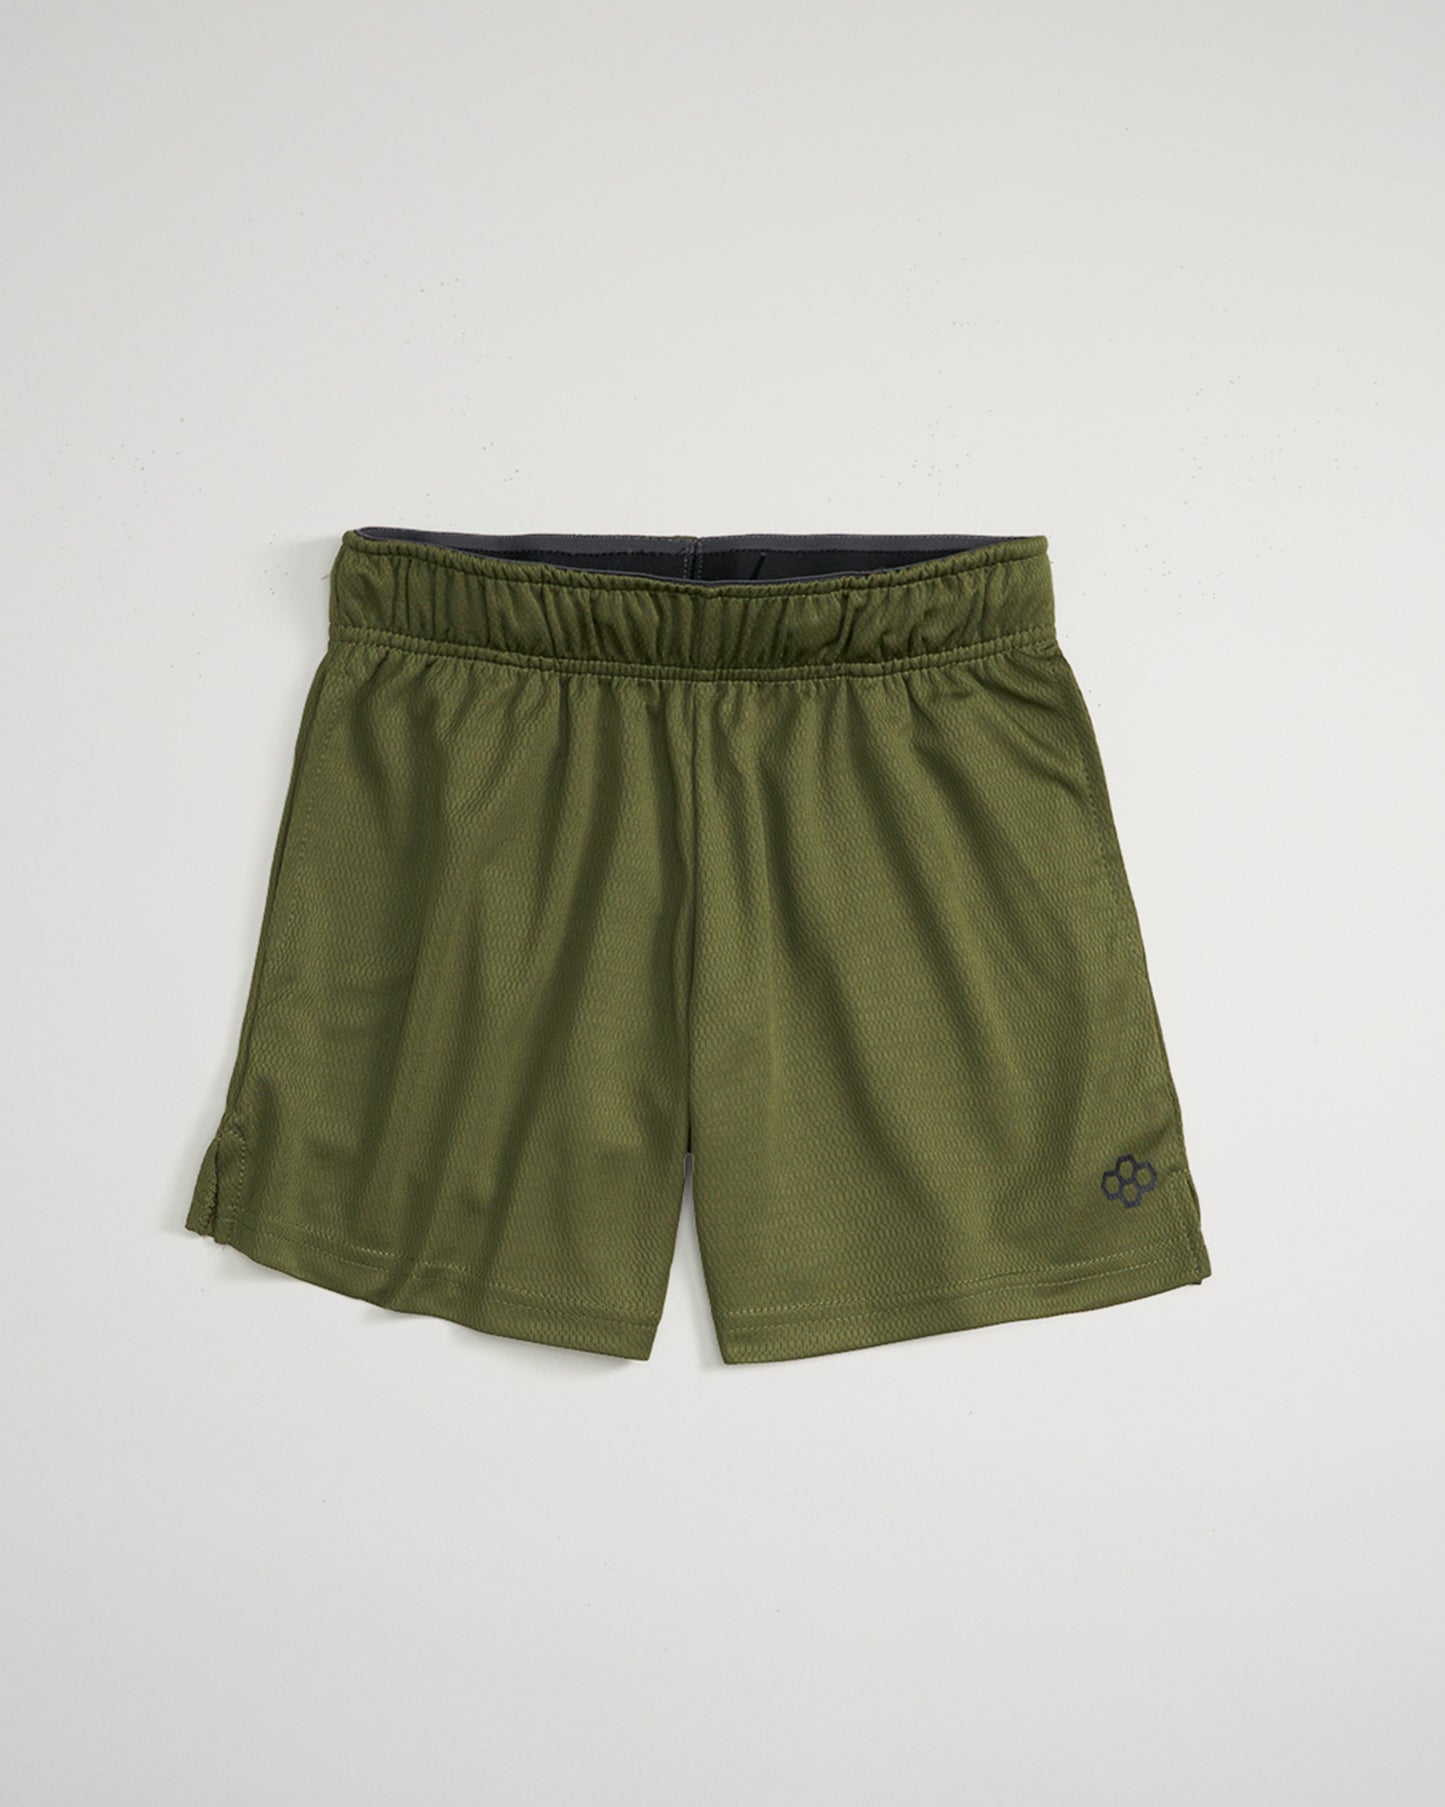 RUDIS 8" Youth Mesh Shorts - Army Green